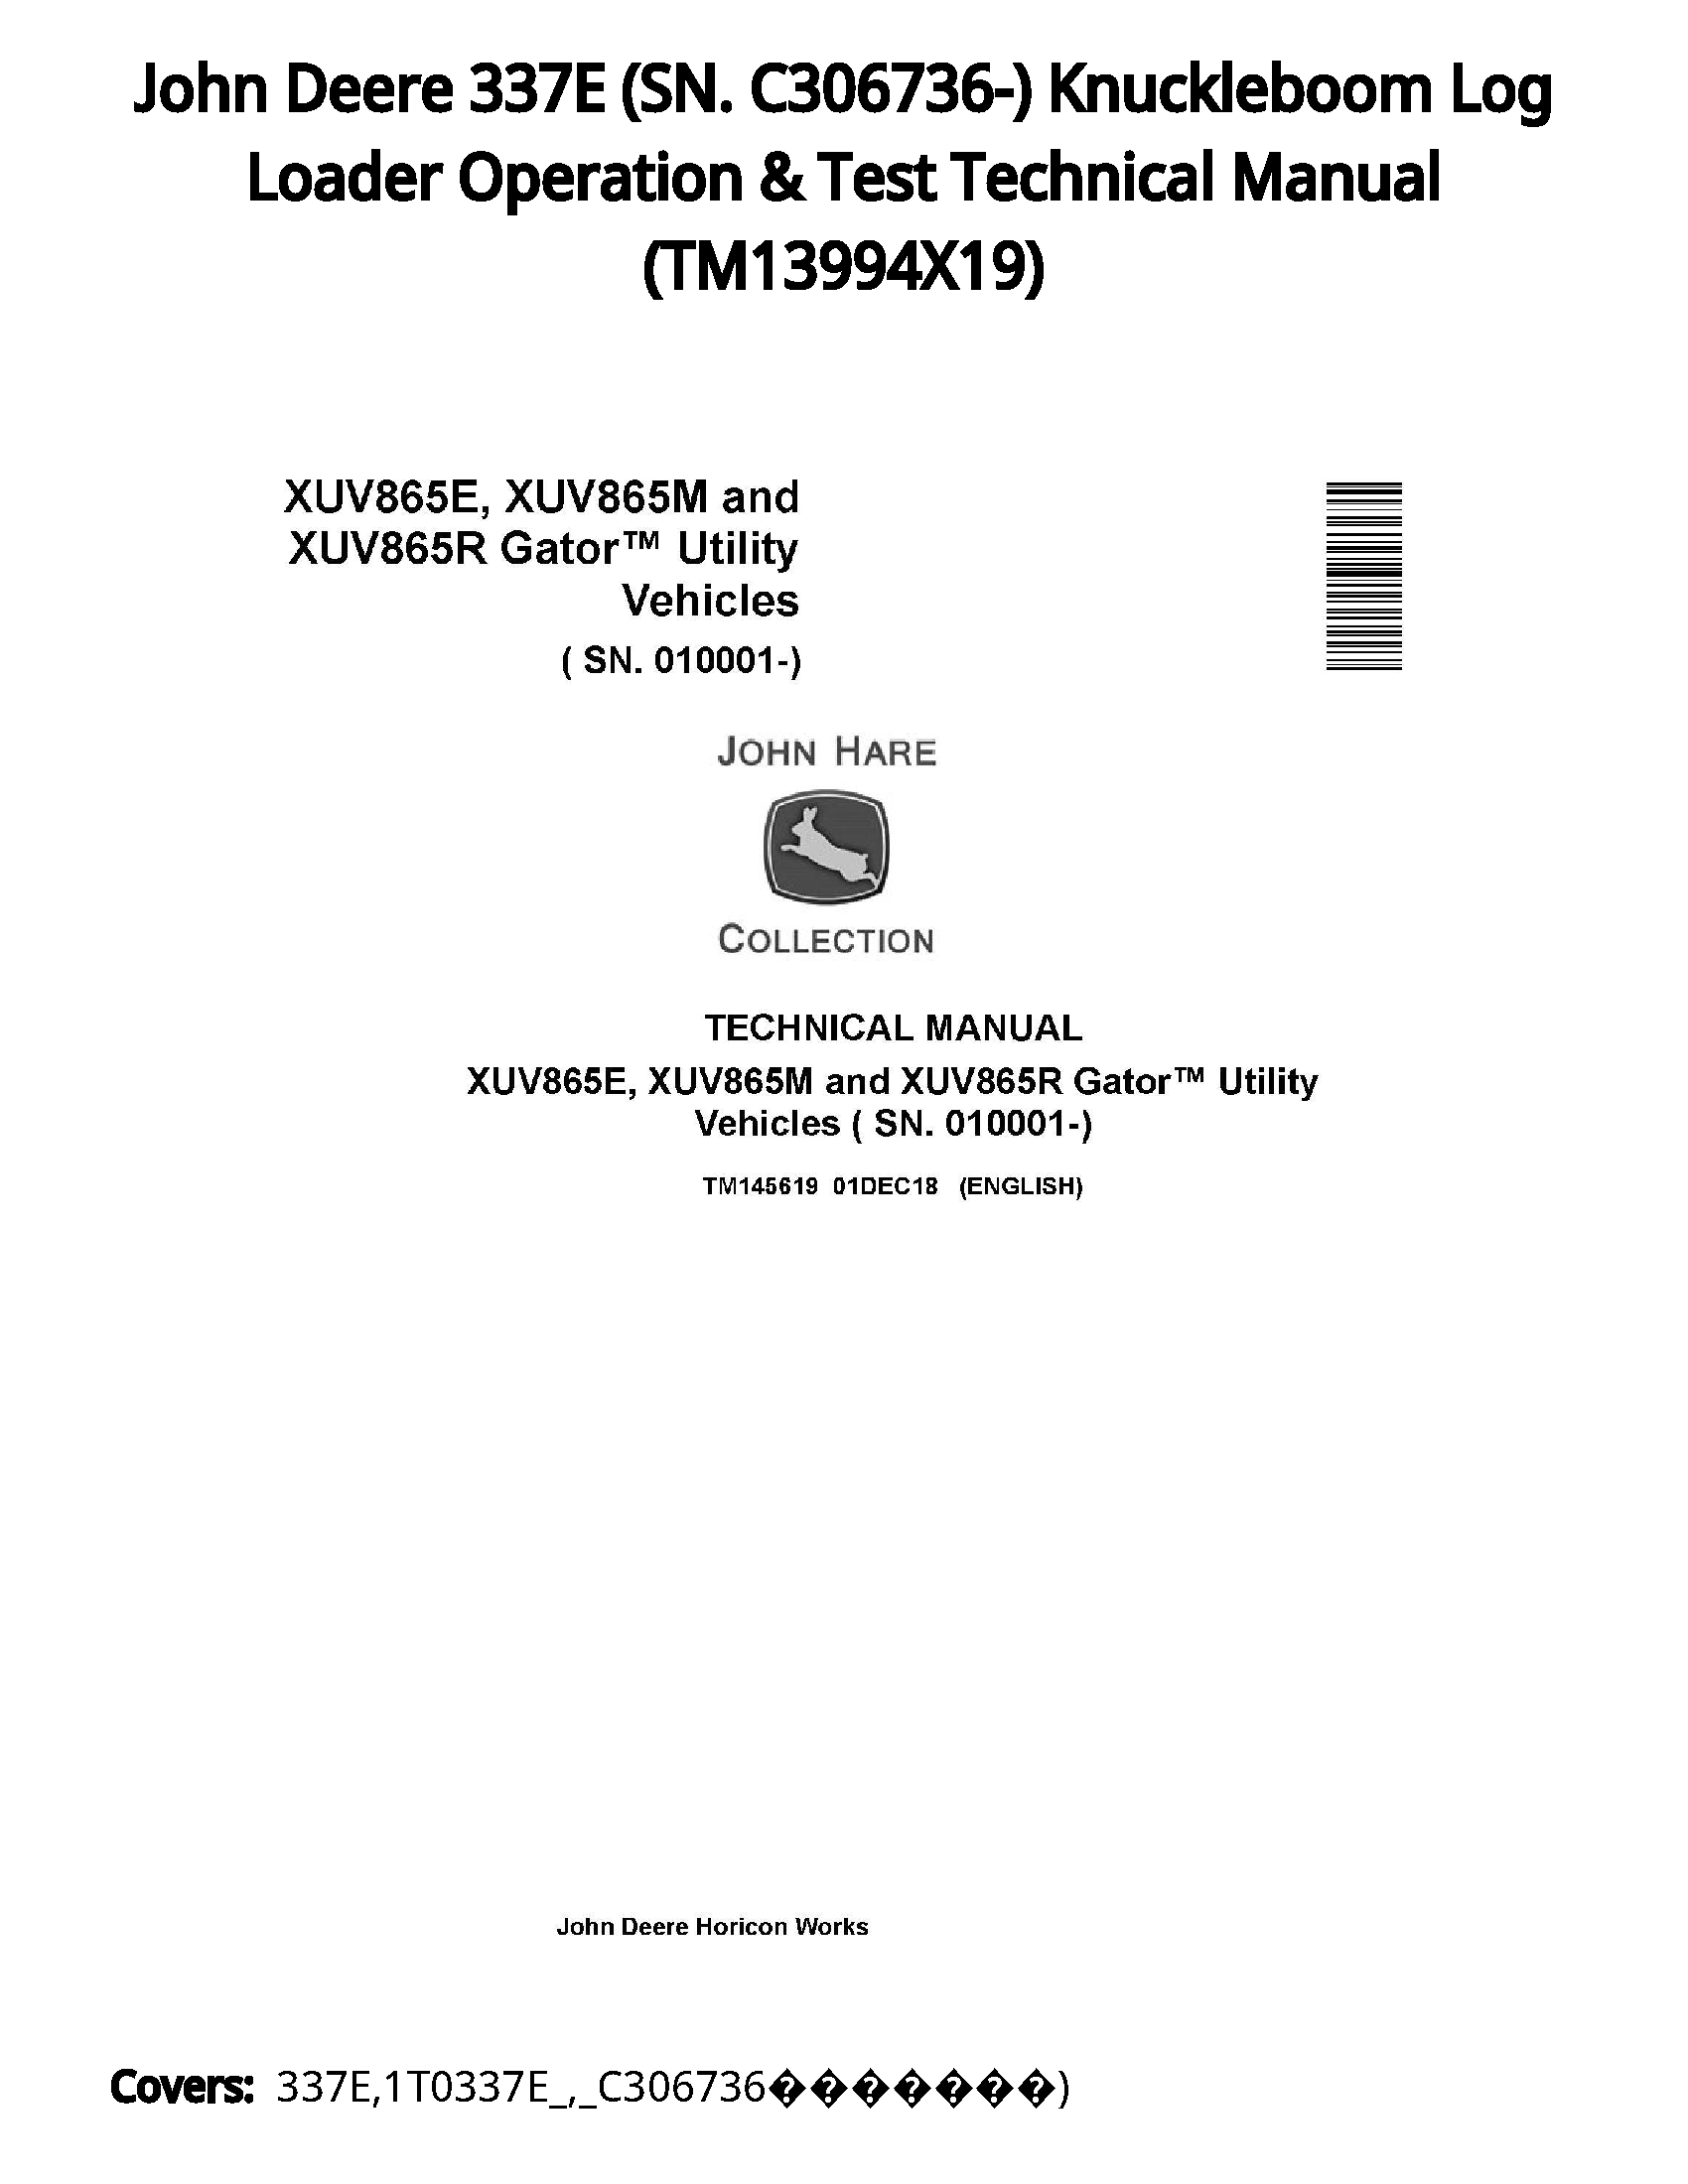 John Deere 337E (SN. C306736-) Knuckleboom Log Loader Operation & Test Technical Manual - TM13994X19